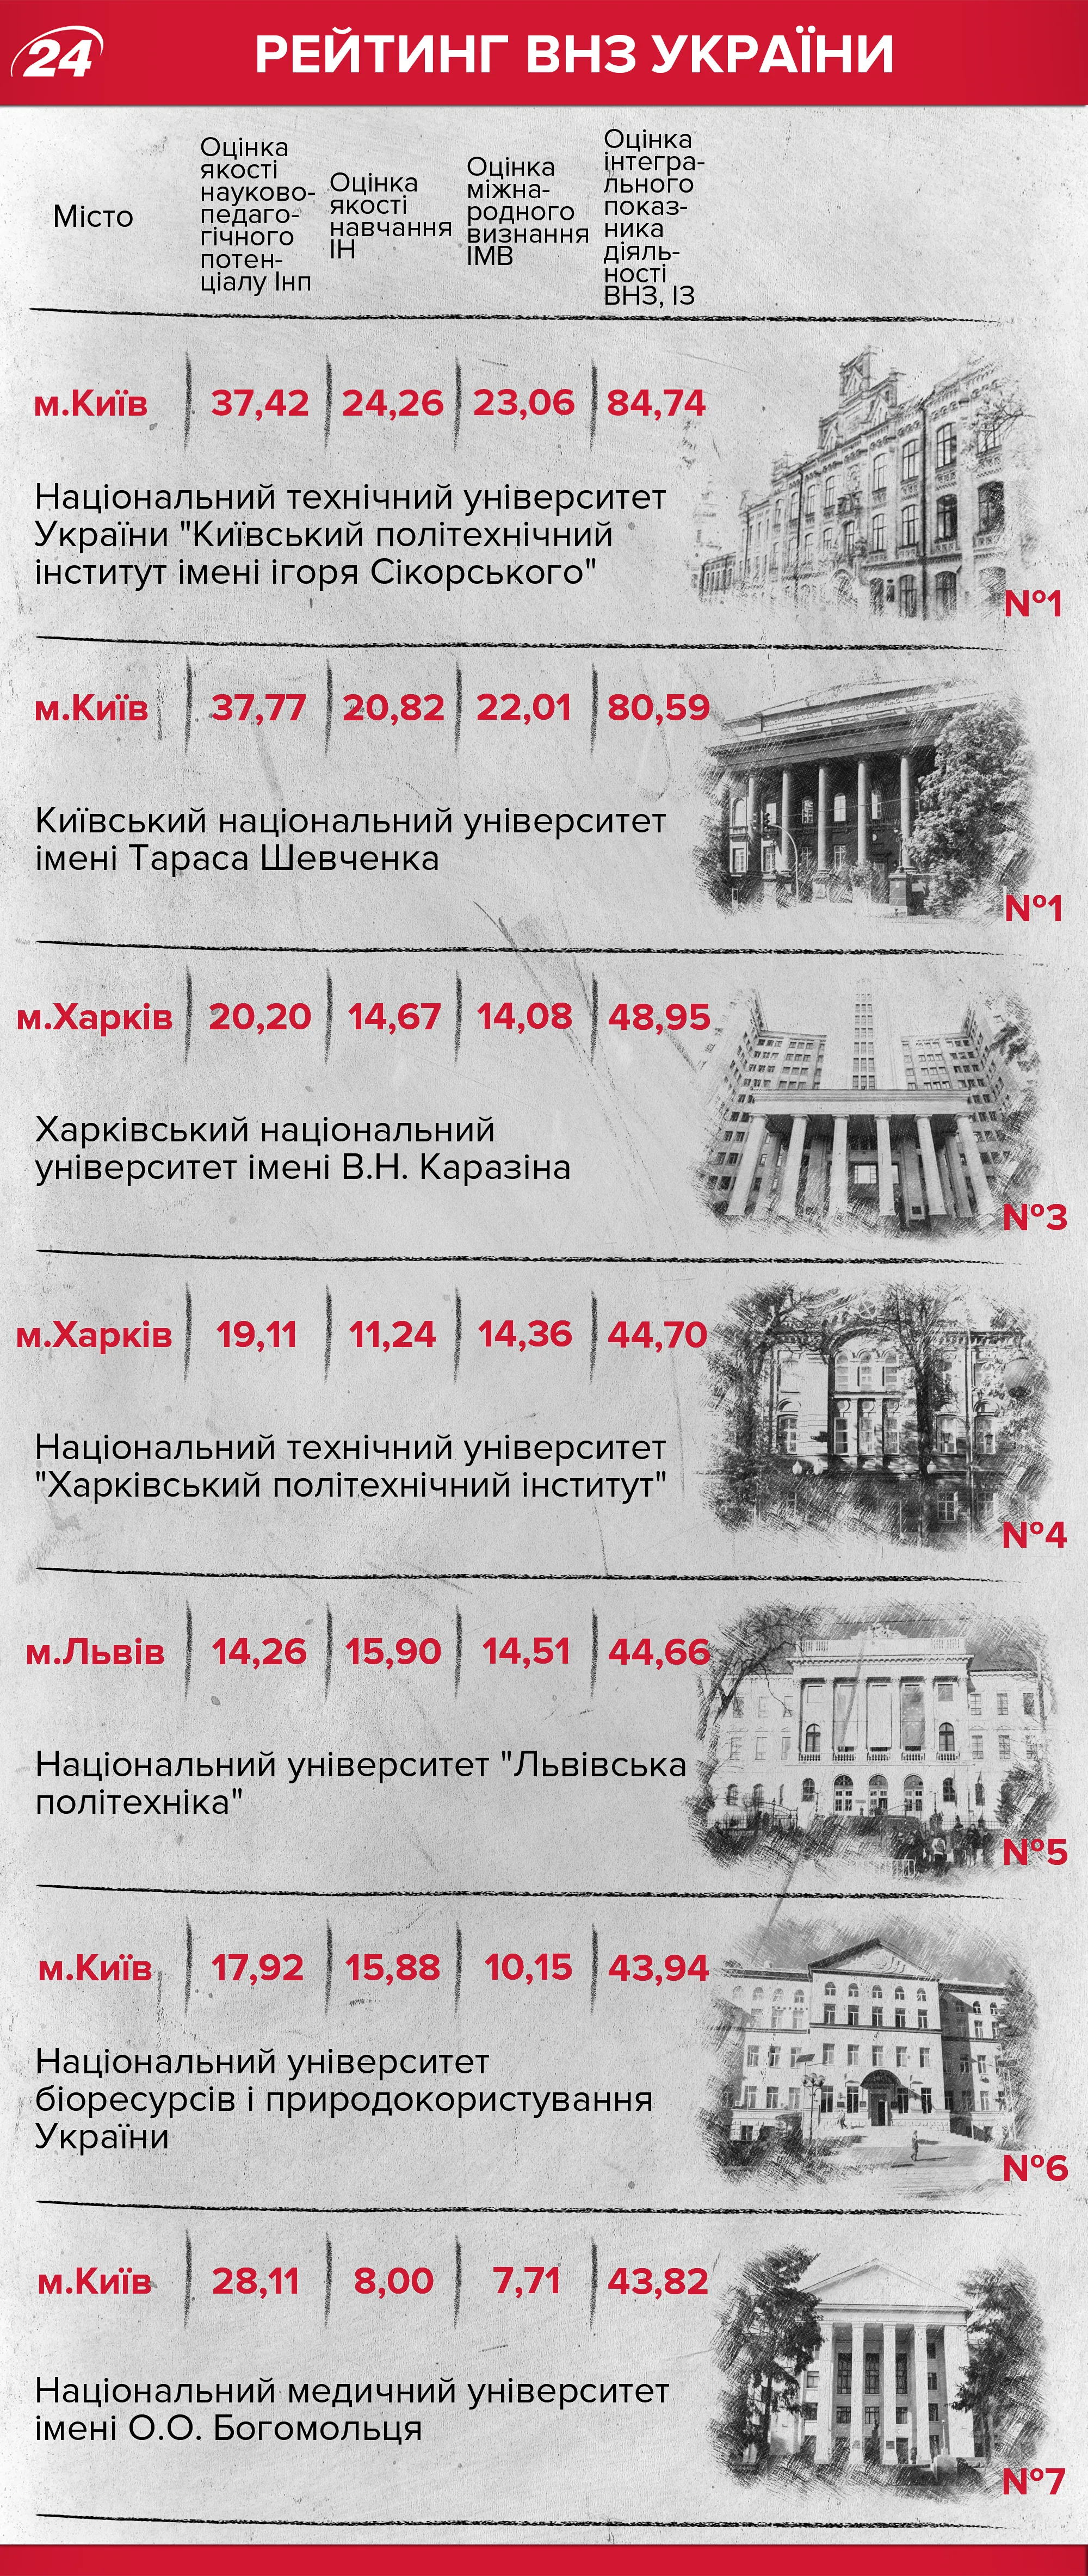 Рейтинг университетов Украины